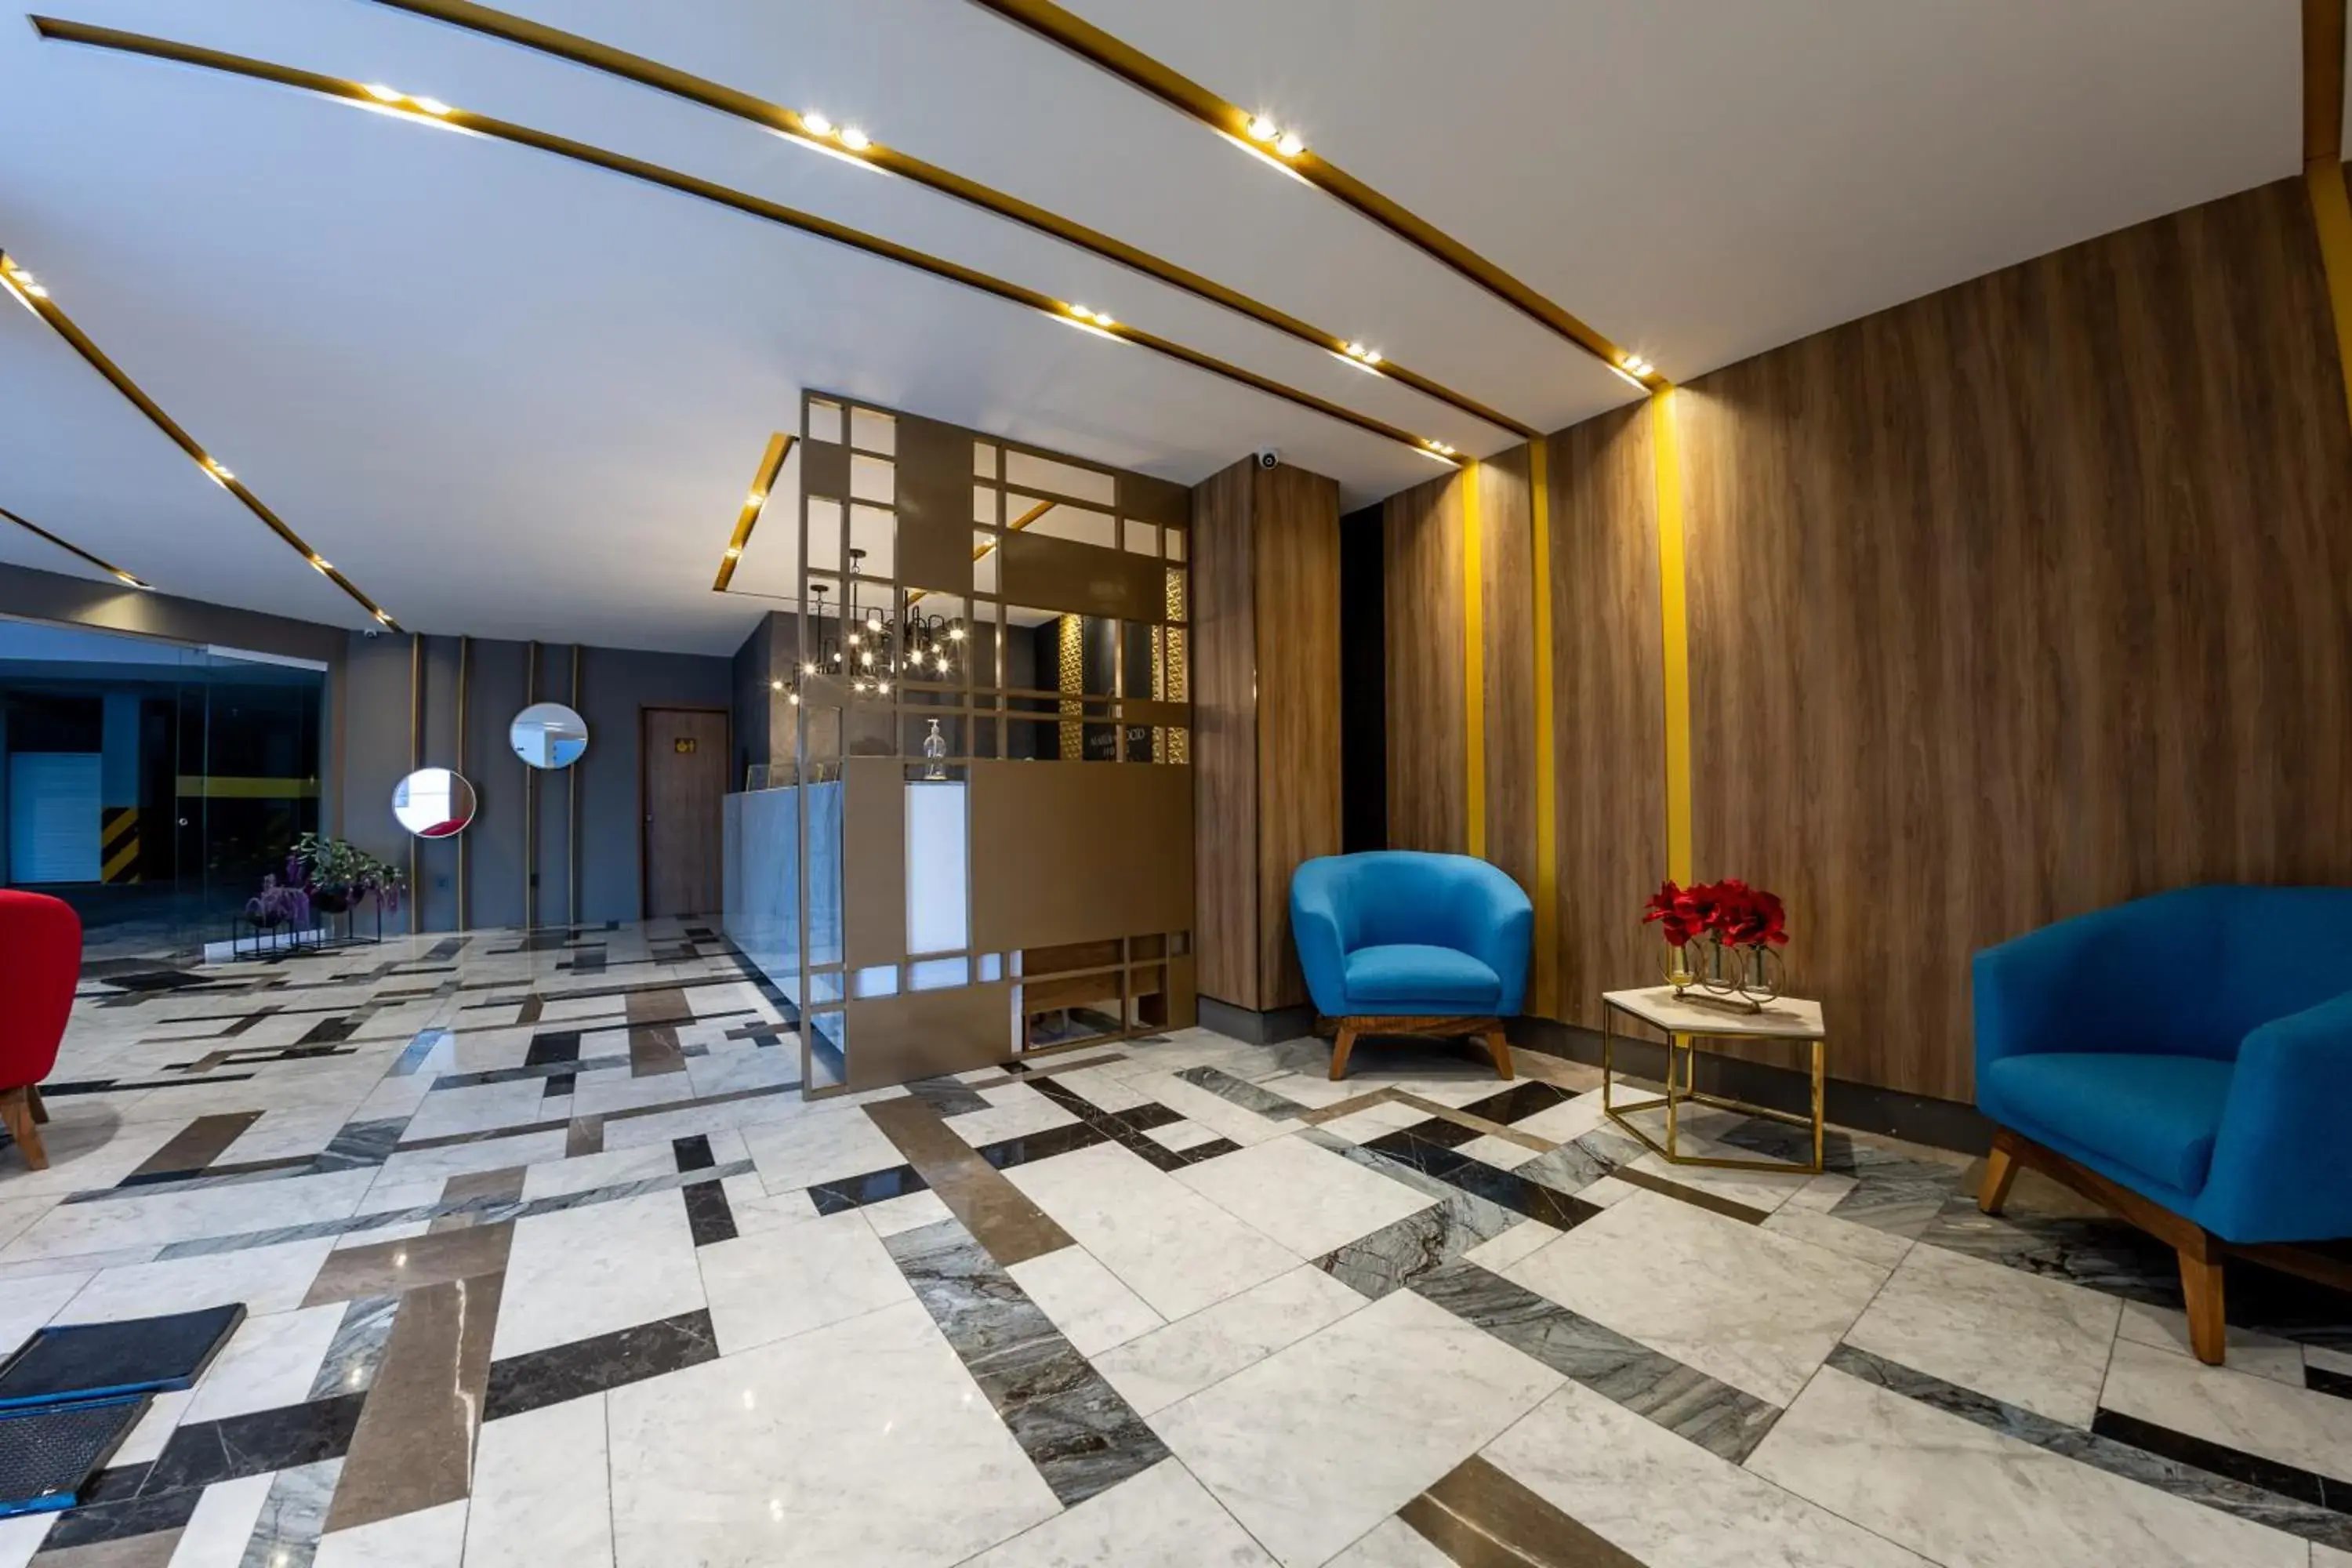 Lobby or reception in Hotel Maria del Rocio